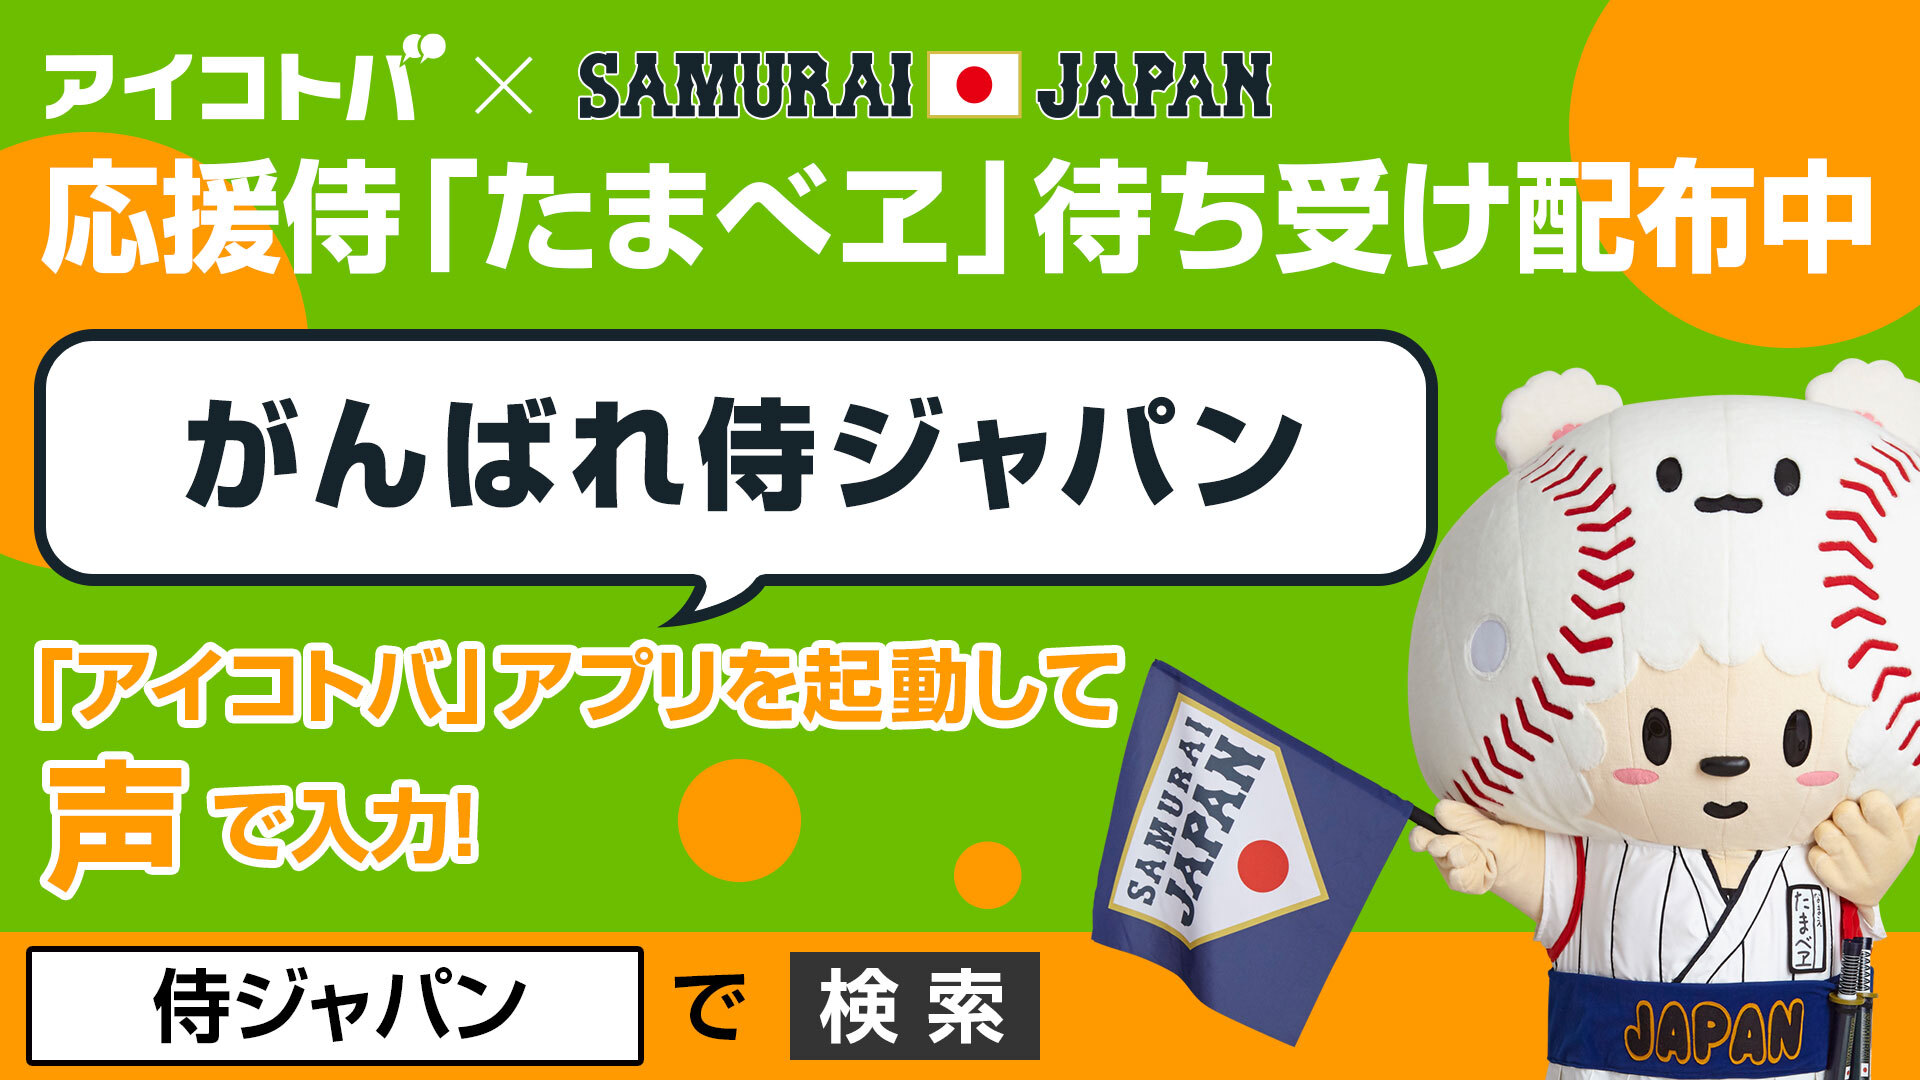 侍ジャパン強化試合で アイコトバ をスマホ に向かってしゃべるだけ 音声認識アプリ アイコトバ で特典がもらえるキャンペーンを3月より実施 株式会社アイコトバのプレスリリース